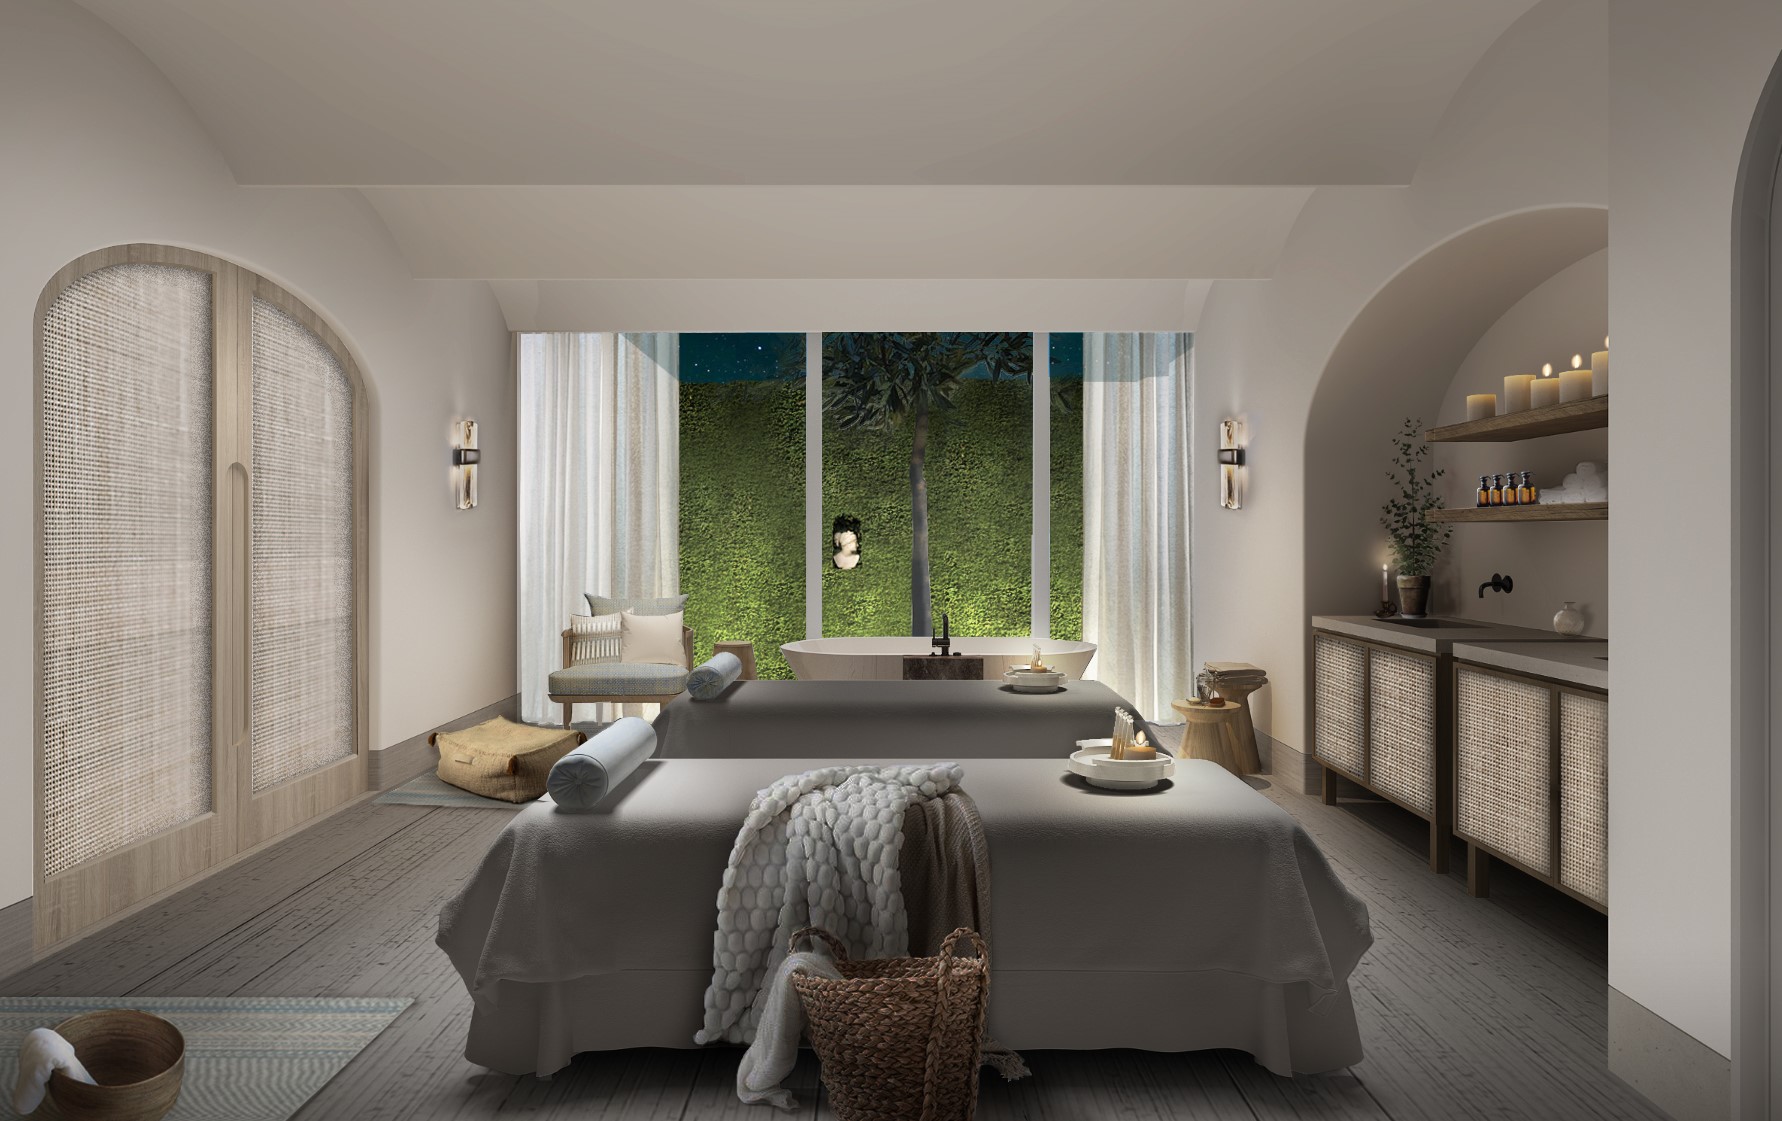 The Renu spa suite